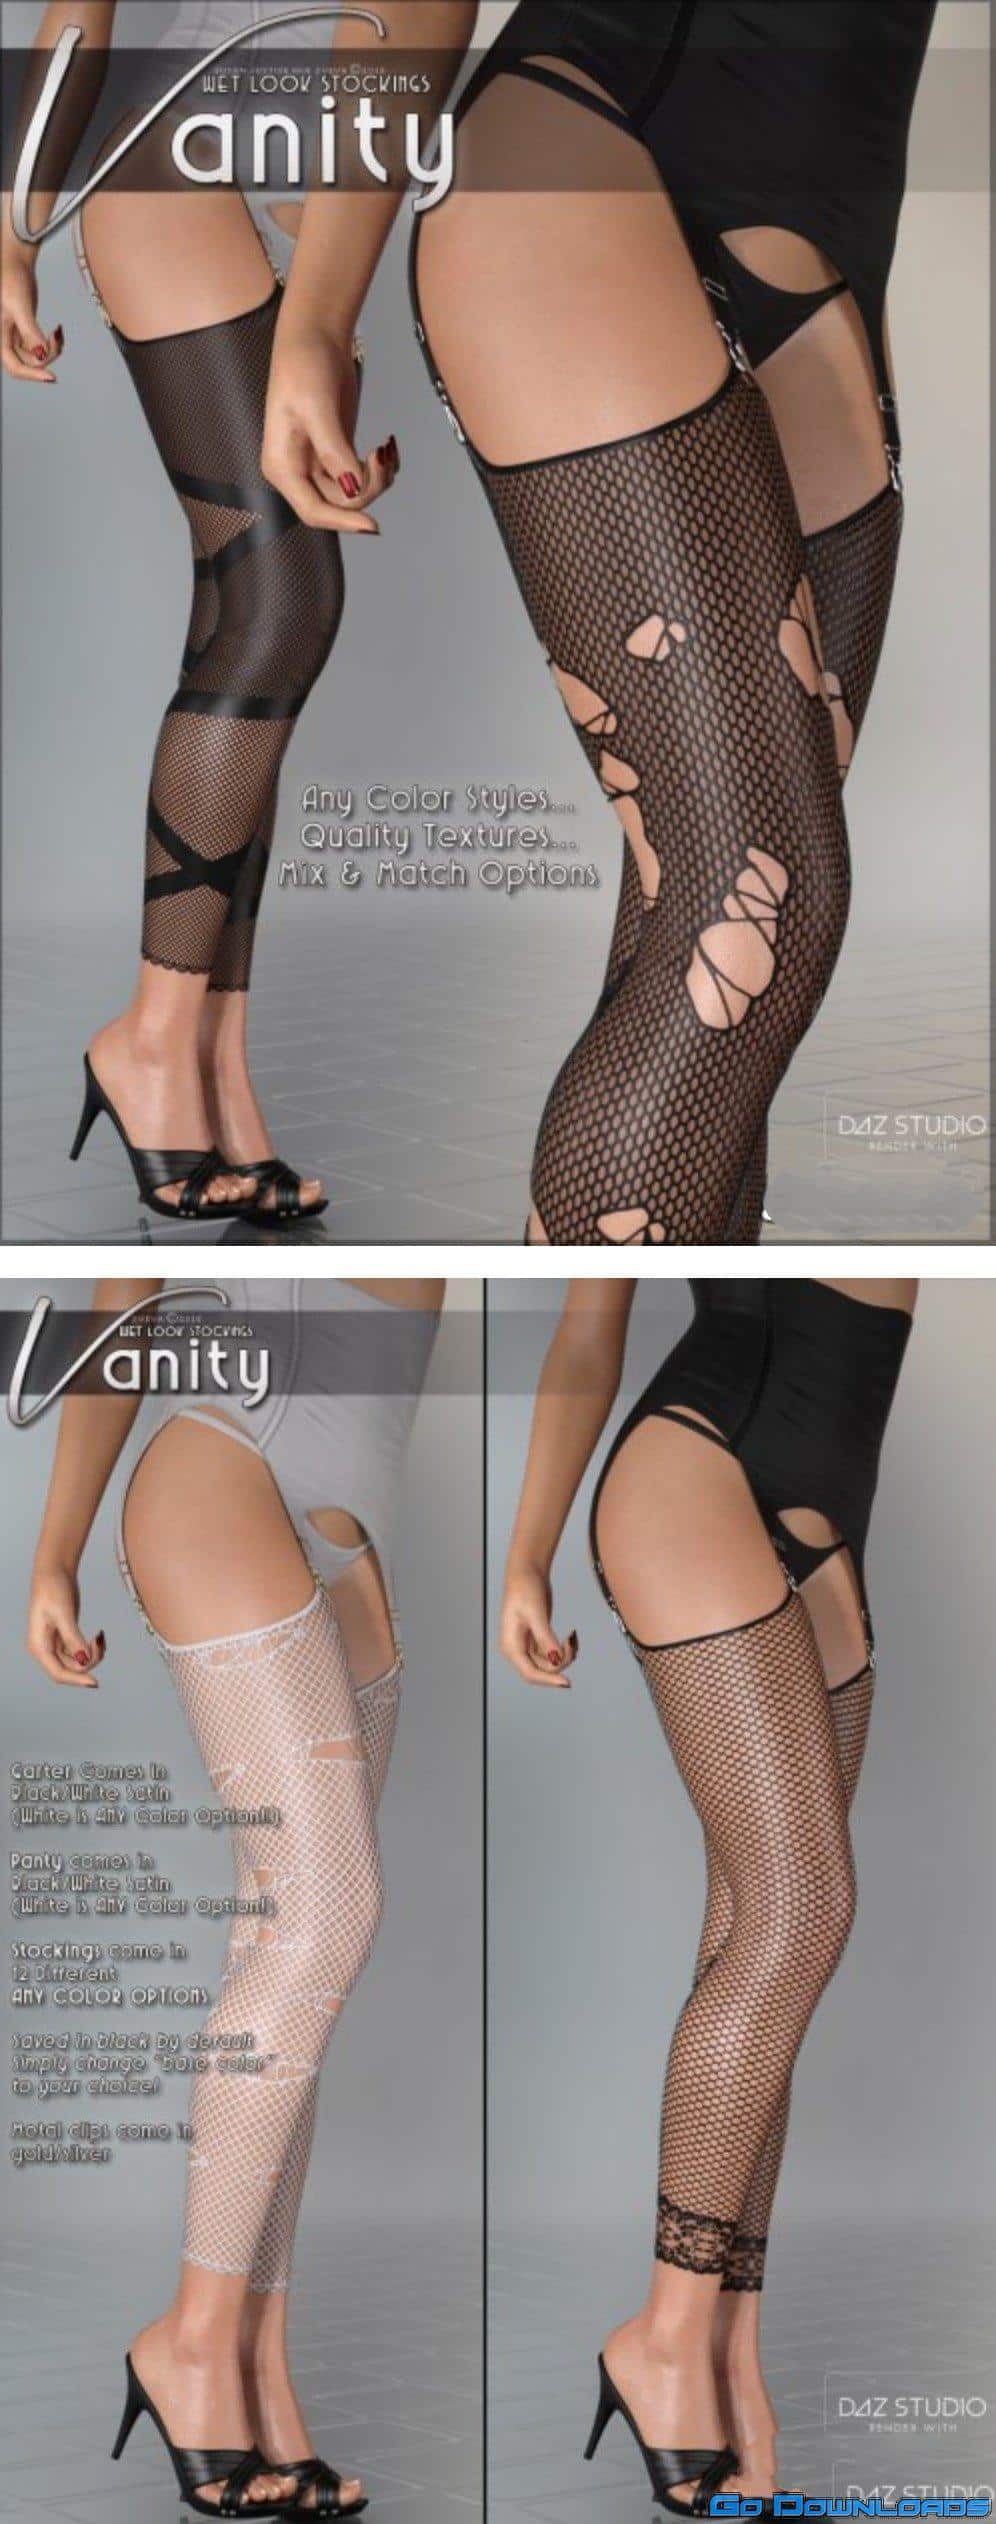 Vanity for Wet Look Stockings Genesis 8 Females Free Download